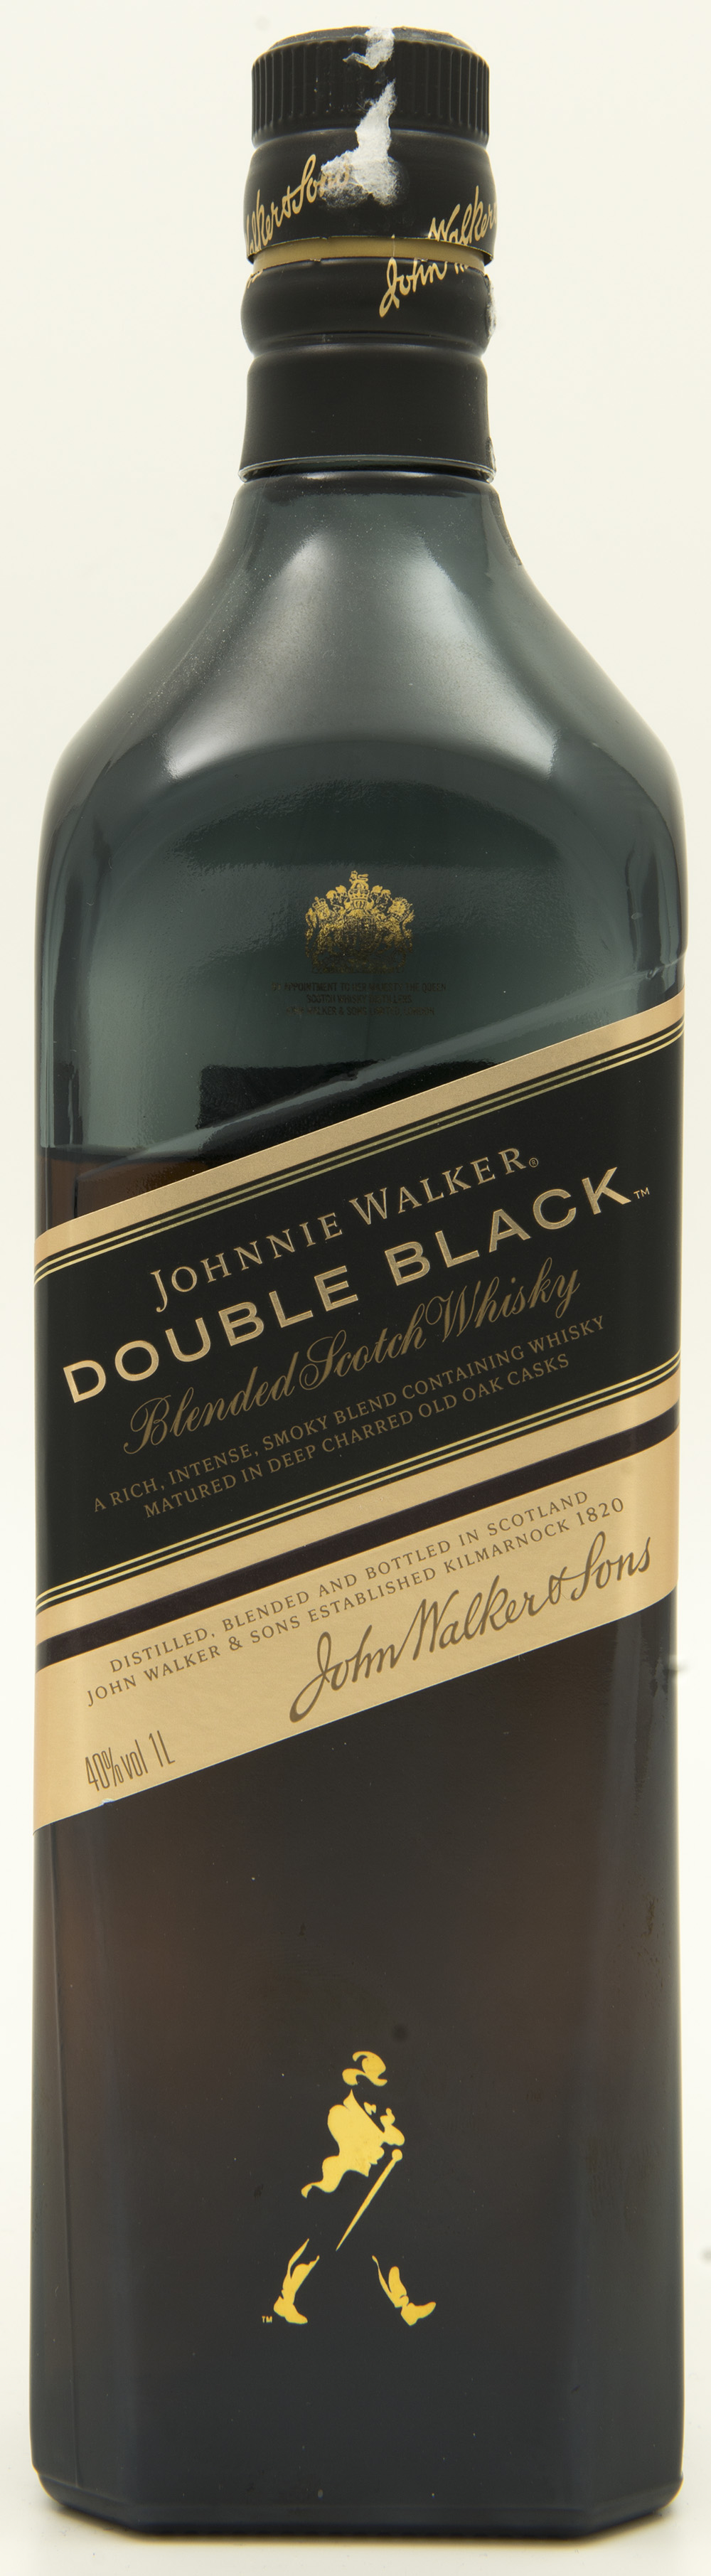 Billede: DSC_6982 - Johnny Walker - Double Black - bottle front.jpg